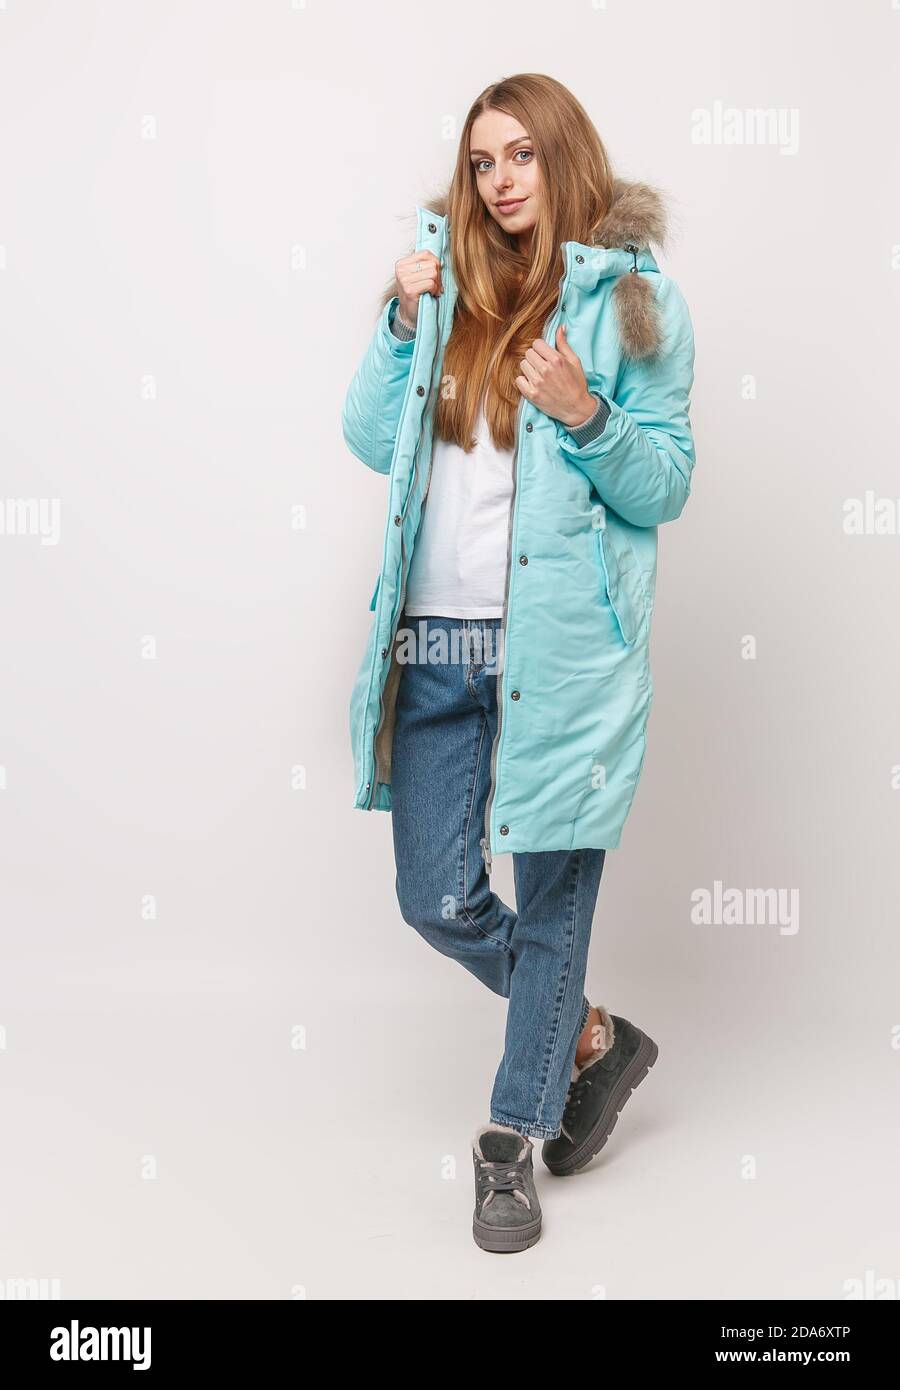 Jeune fille dans une veste d'hiver turquoise sur fond blanc. Vêtements d' hiver concept de publicité Photo Stock - Alamy